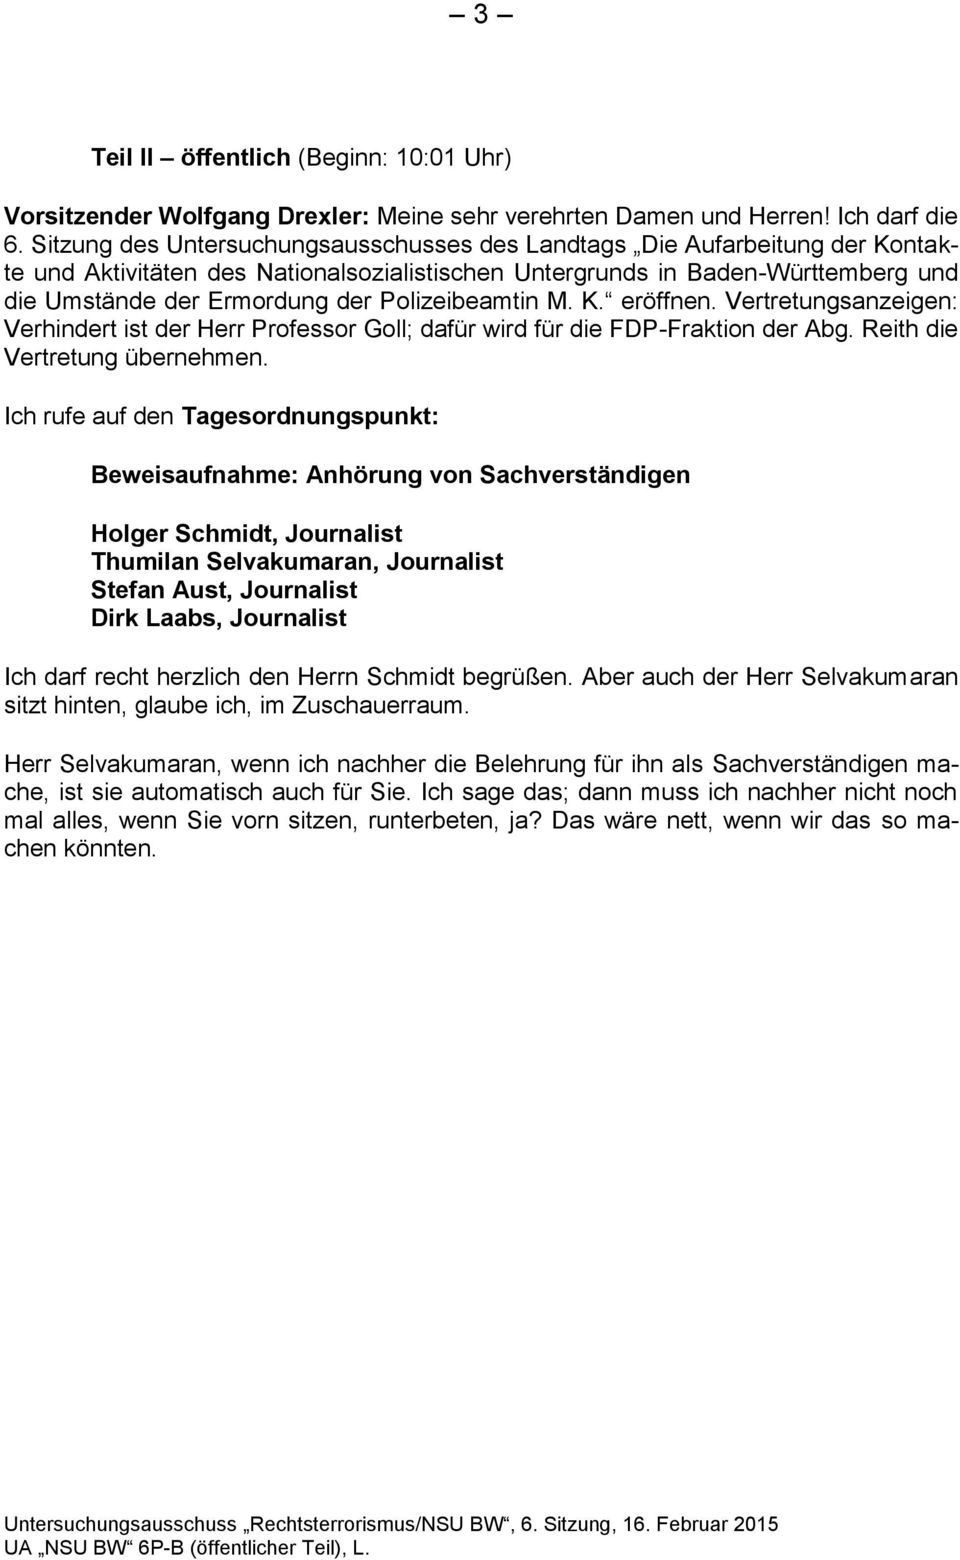 Polizeibeamtin M. K. eröffnen. Vertretungsanzeigen: Verhindert ist der Herr Professor Goll; dafür wird für die FDP-Fraktion der Abg. Reith die Vertretung übernehmen.